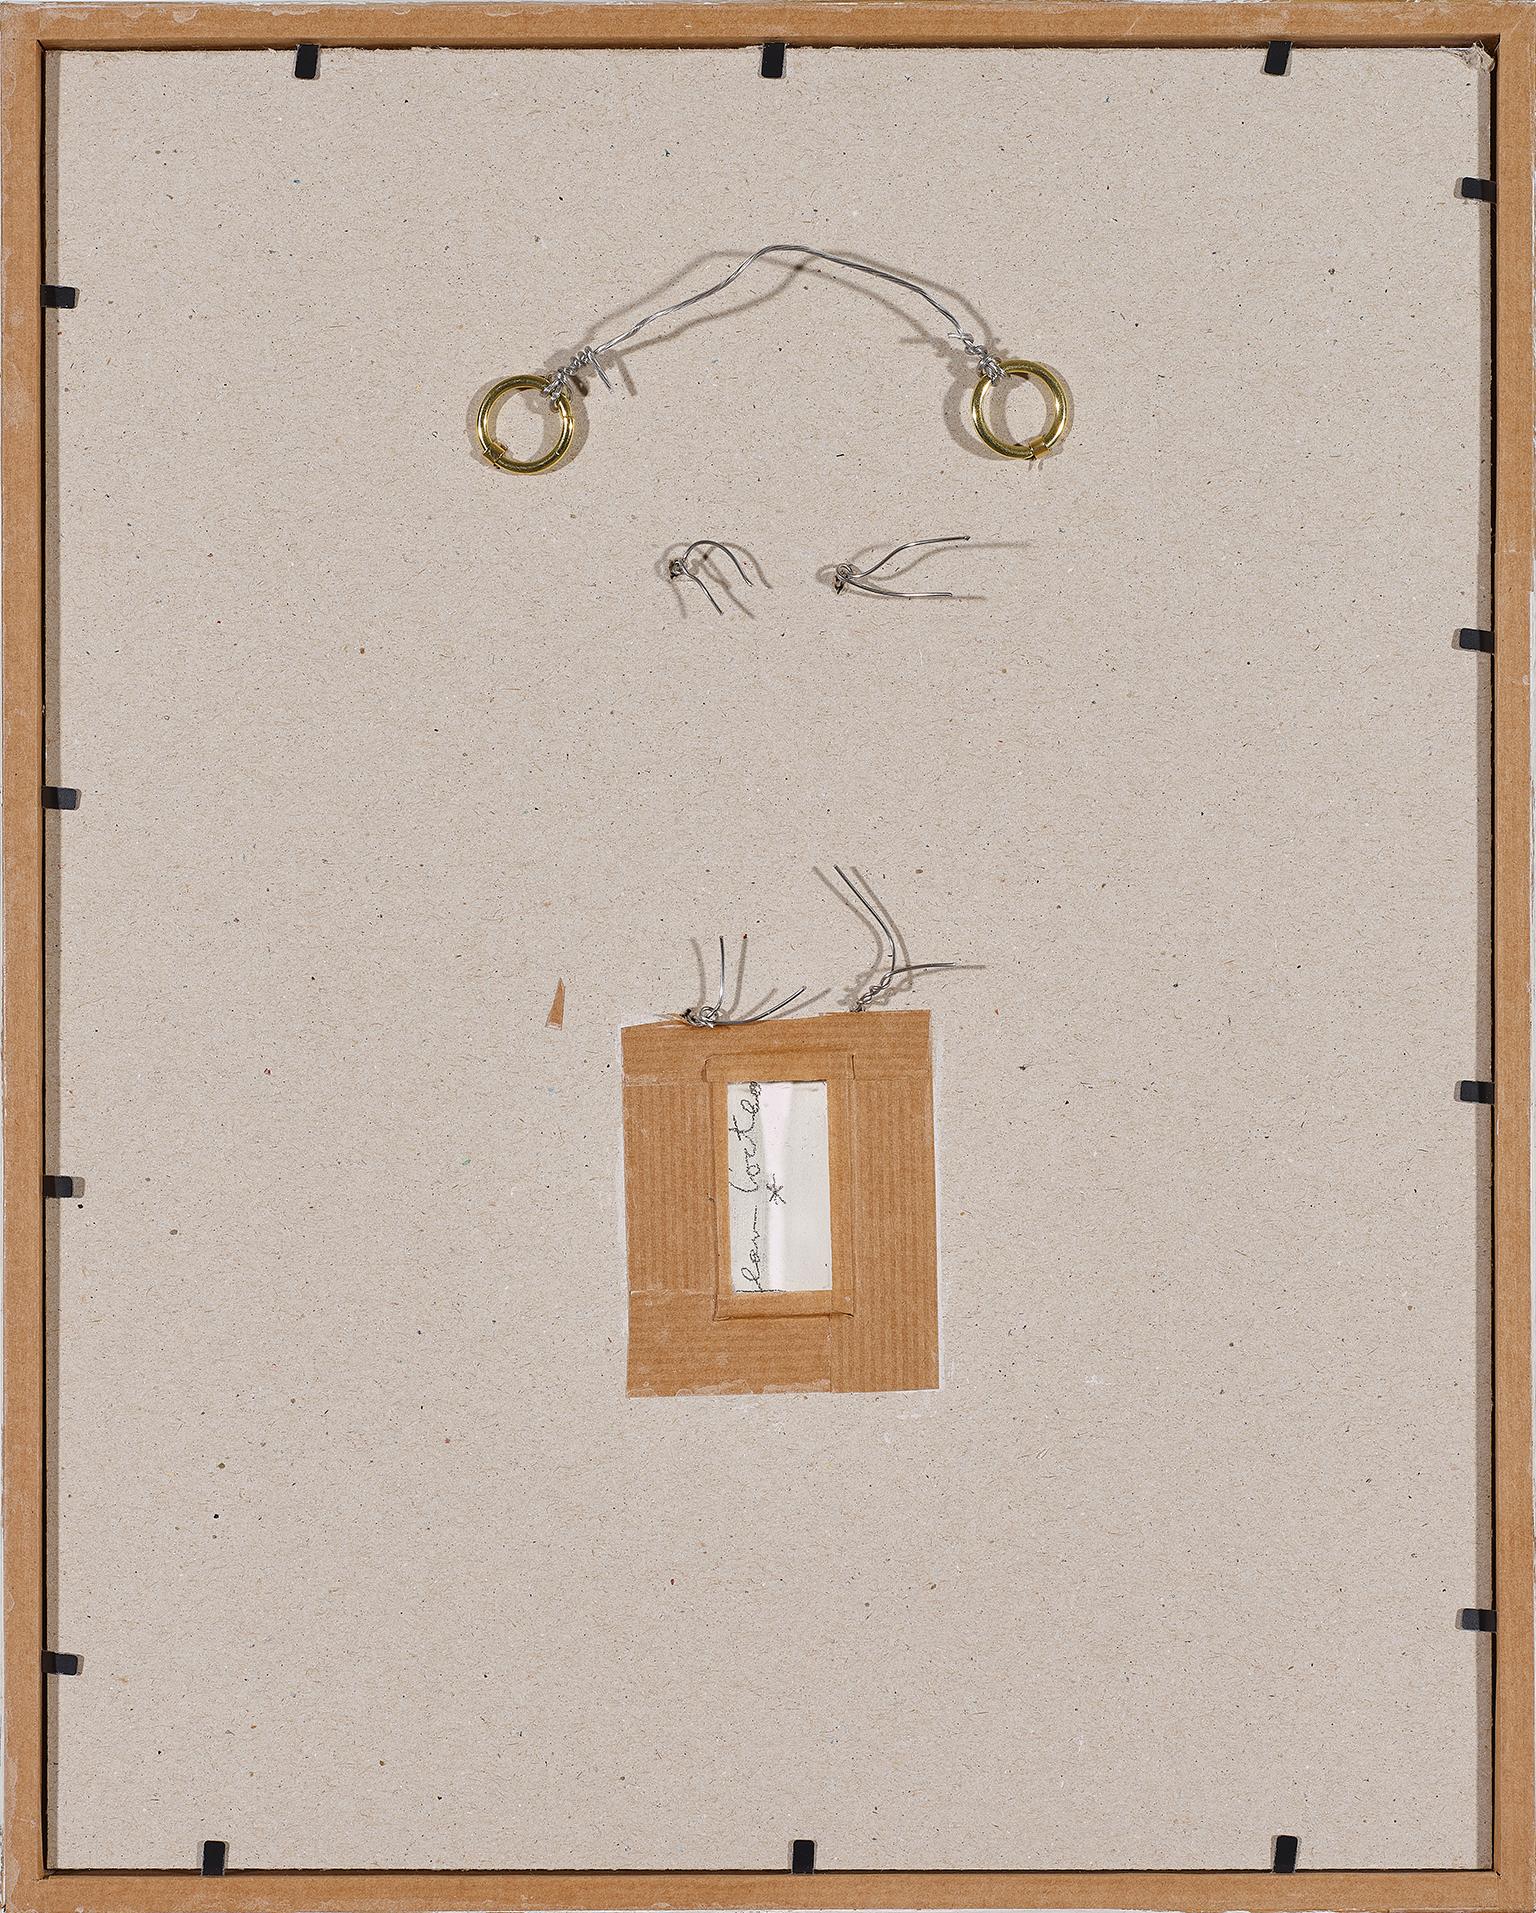 Jean Cocteau (1889 -1963 )

Vé et Astrologie  pendentif en céramique :

Vé : signé sous Whiting 1ere  variante 
( Terre blanche en relief ). page 212 
Taille : 7 x5,5 cm 
catalogue raisonné Annie Guédras .RB 3.

Astrologie : signé sous Whiting 1ere